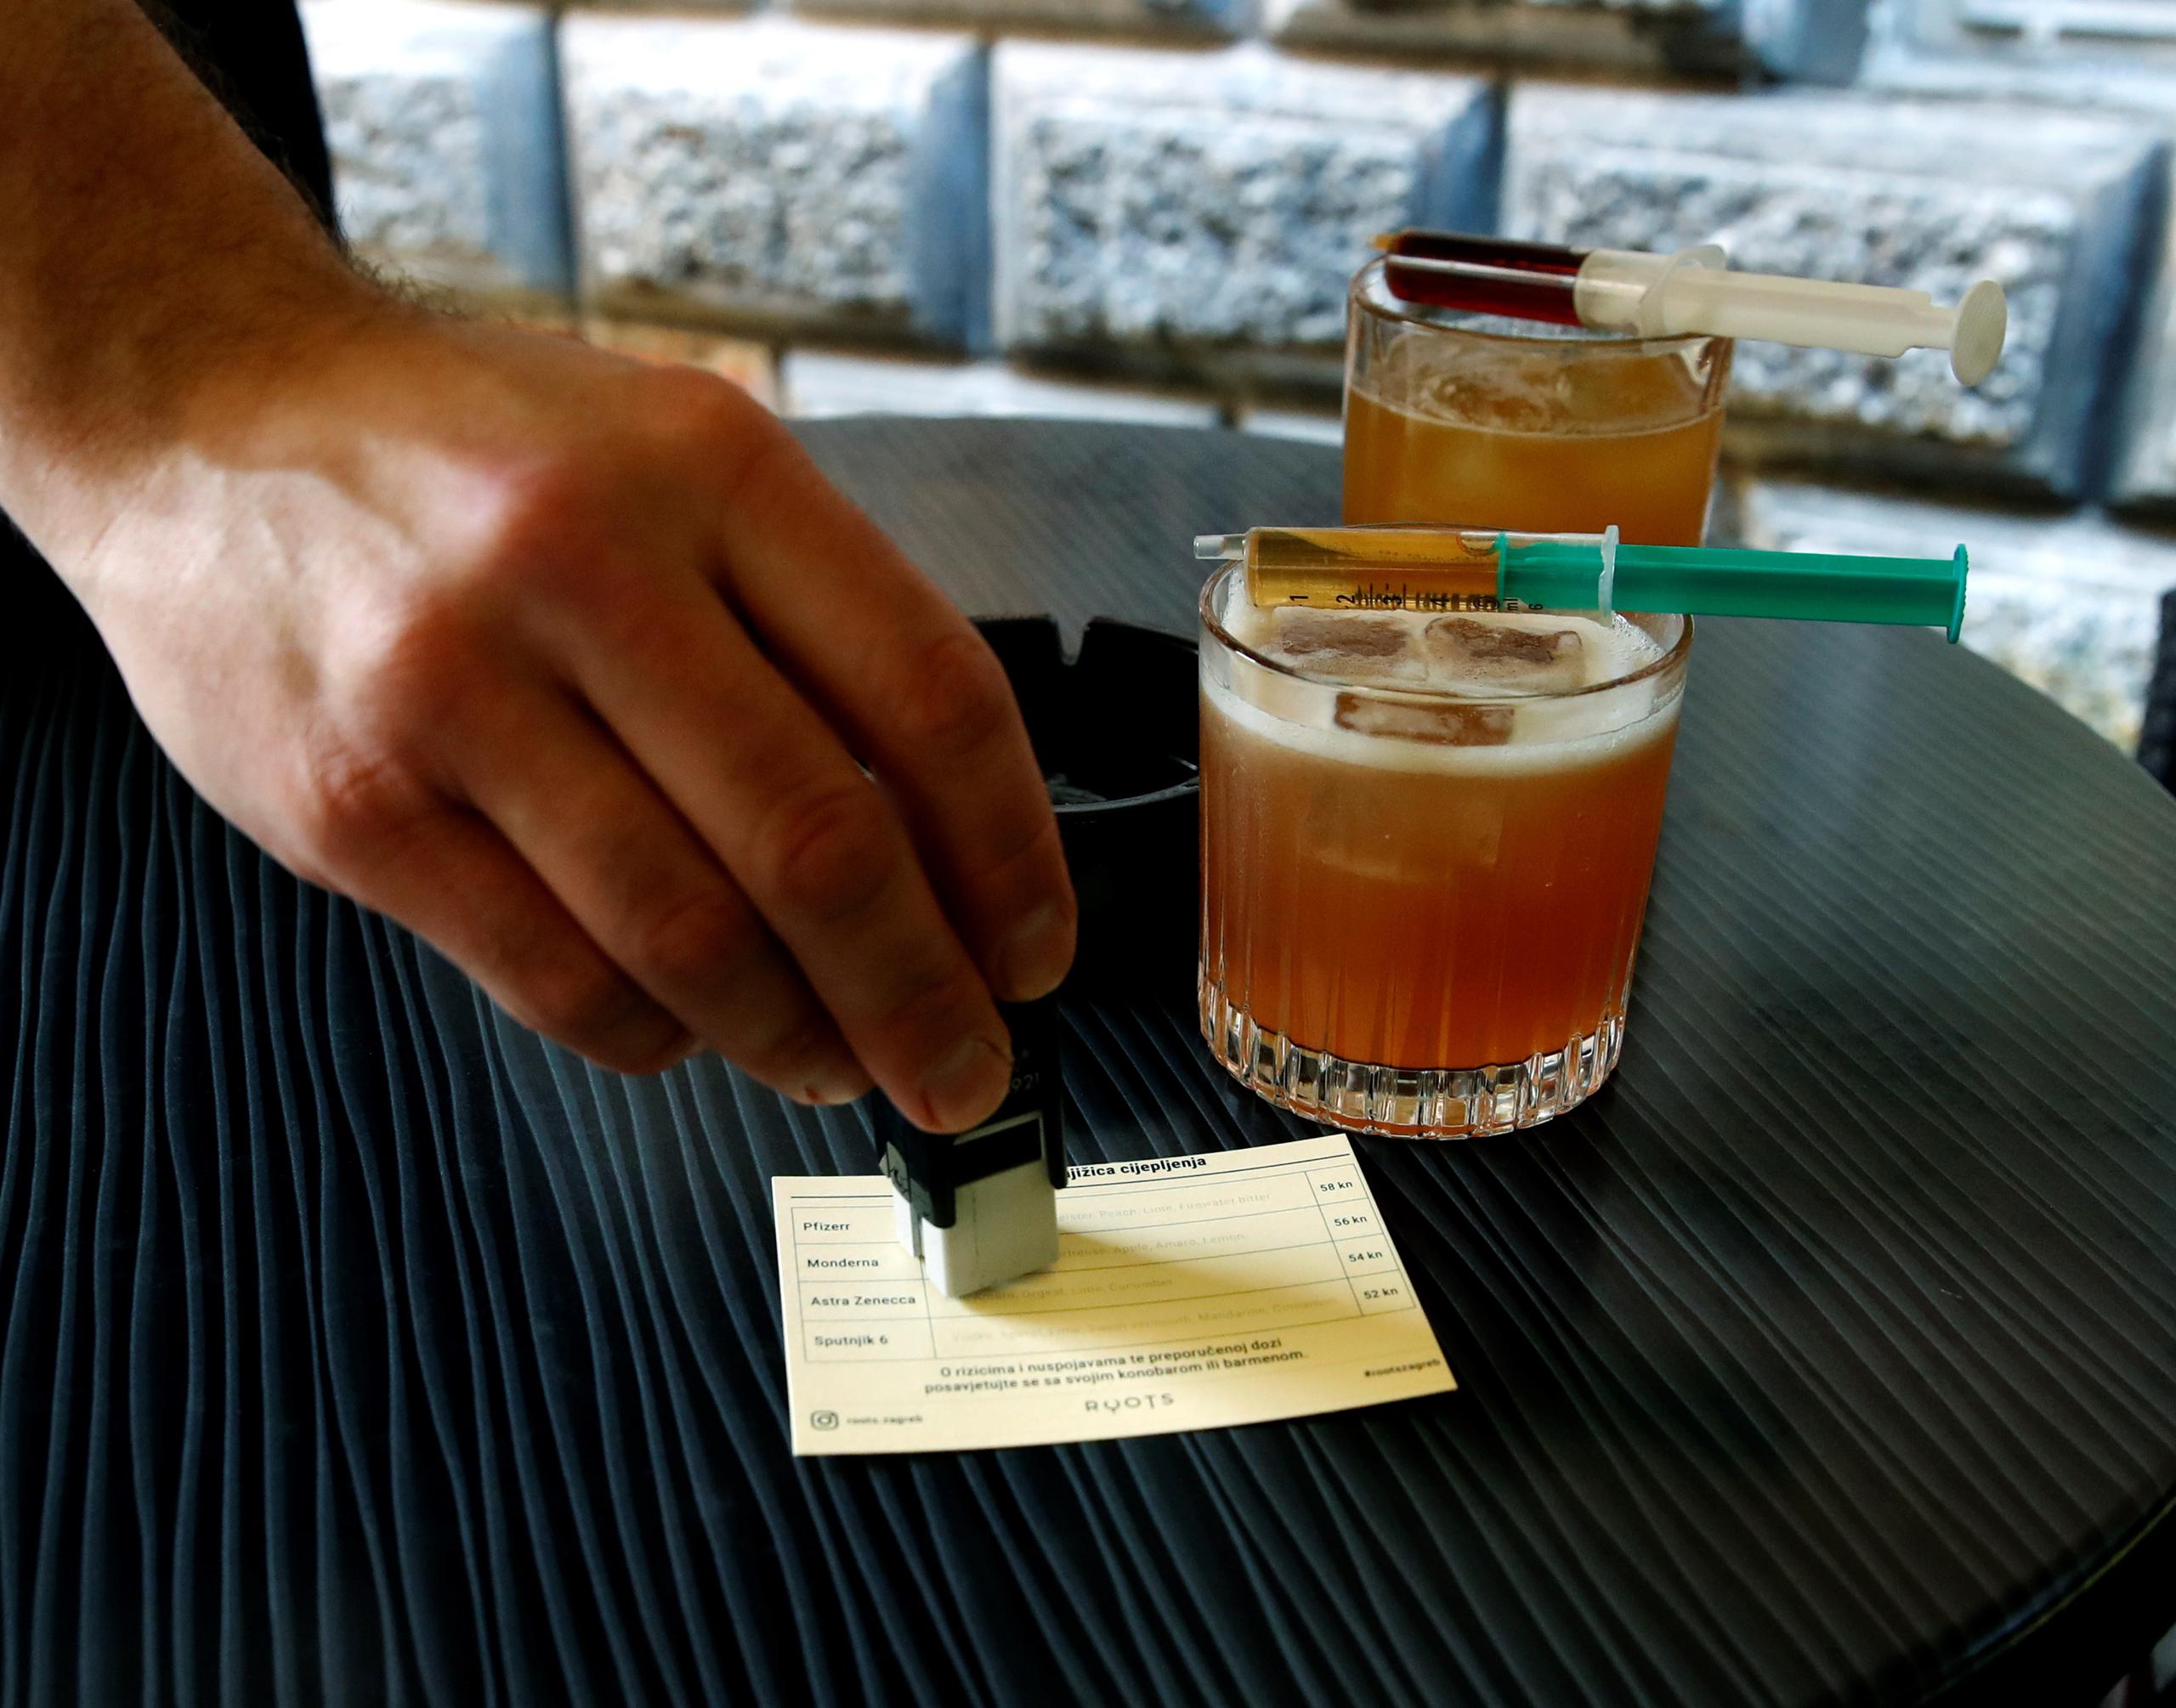 El cliente mismo tiene que inyectar el último ingrediente, que está en la jeringa con la que se sirve el cóctel, y al final también recibe un sello en un pequeño certificado.